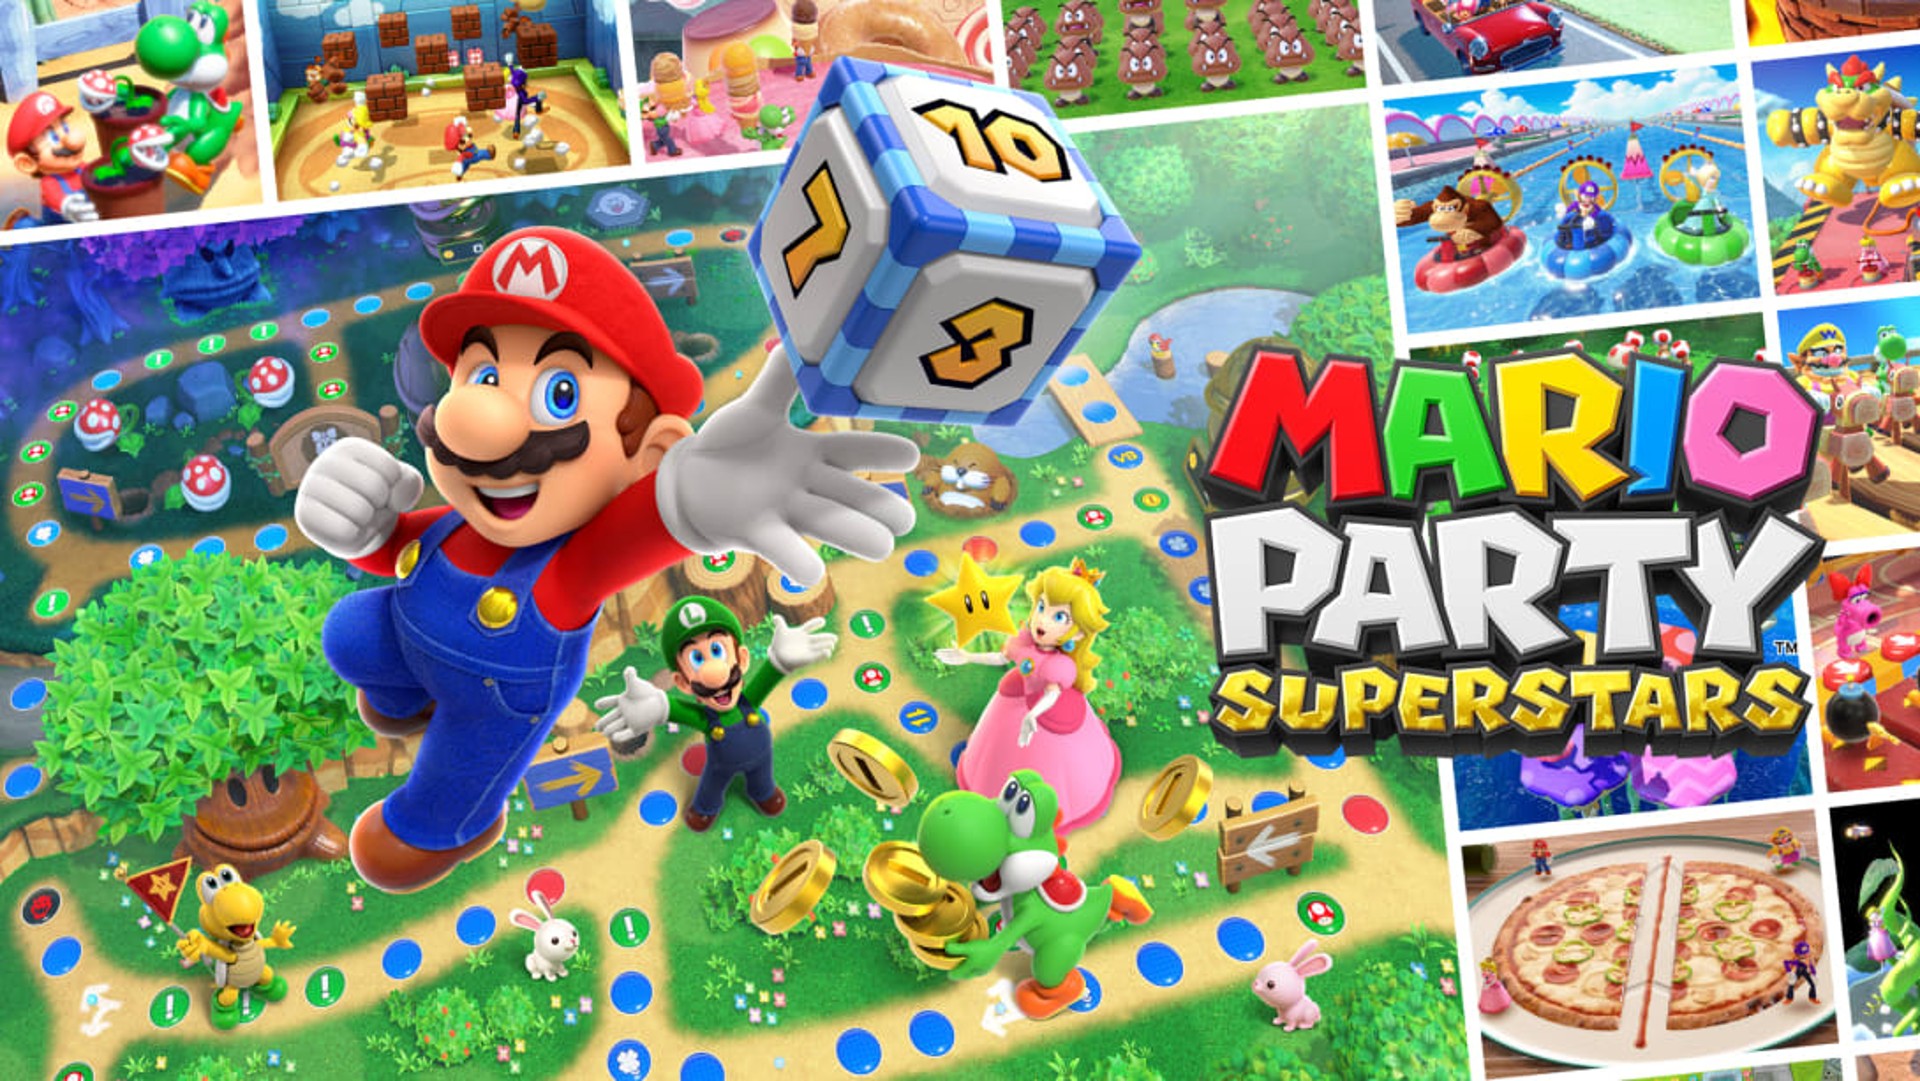 Mario Party Superstars นำเกมชักเย่อในตำนานกลับมา งานนี้มีเจ็บมือ